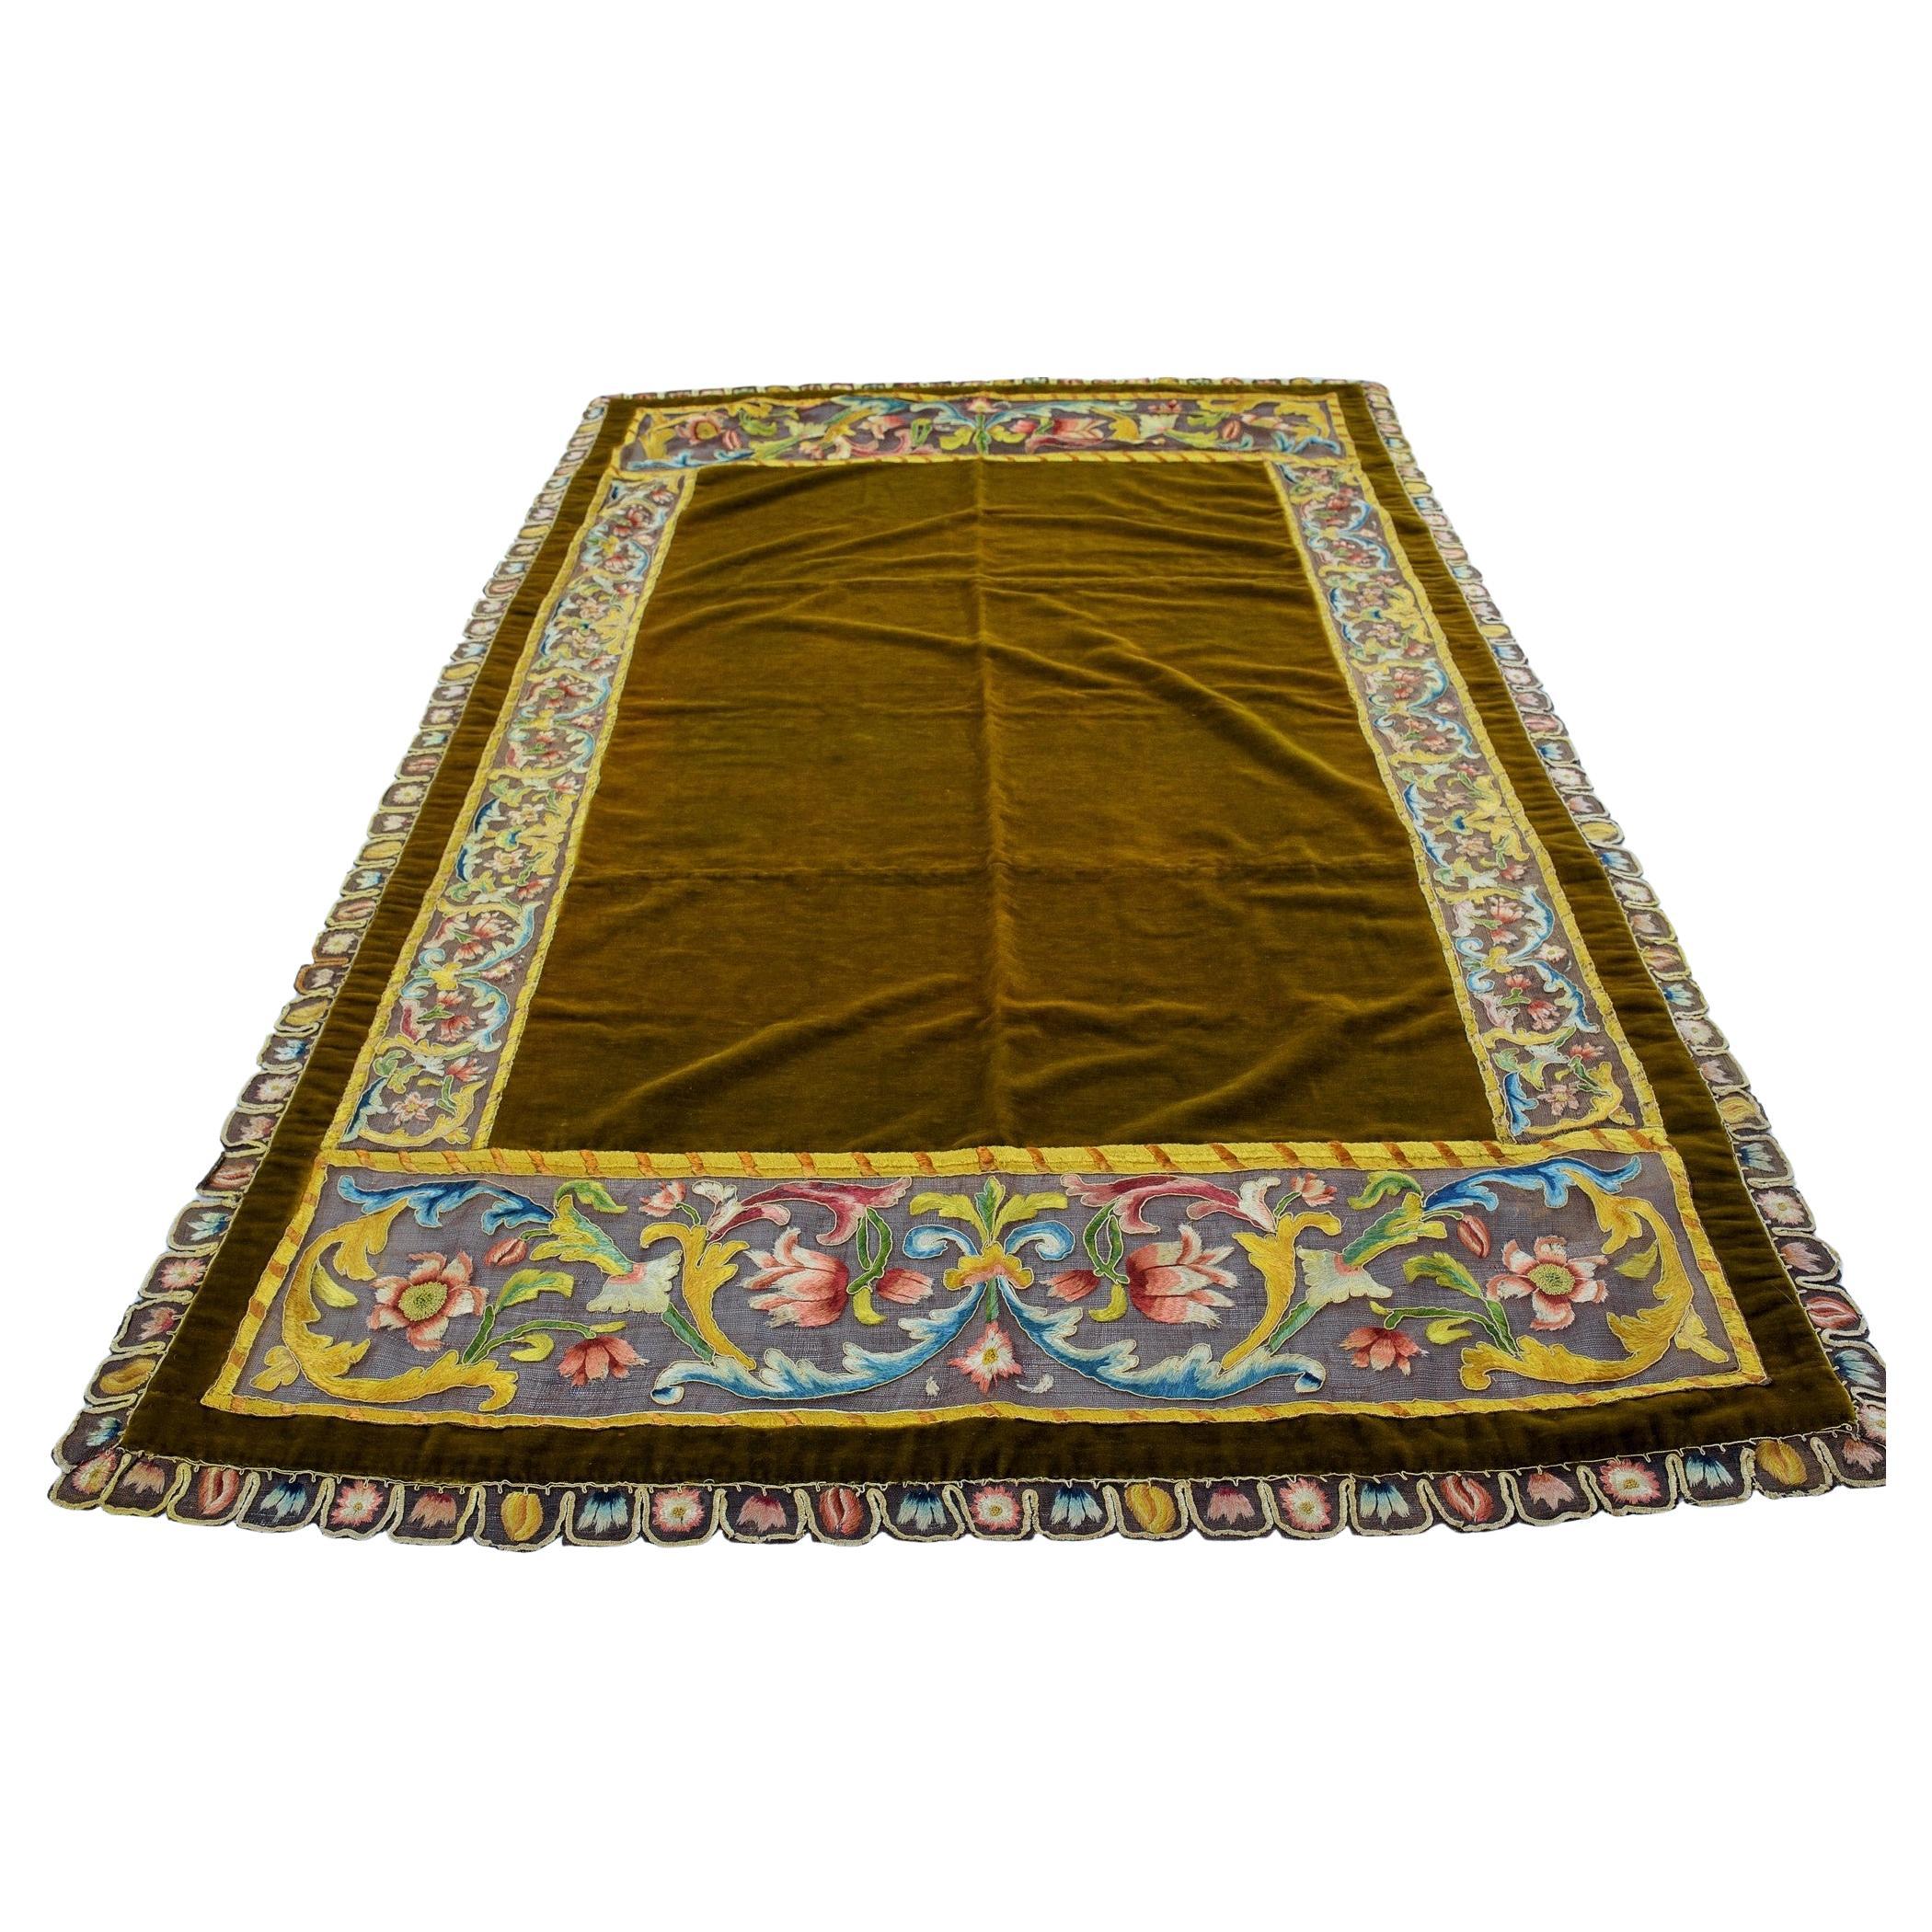 Tapis de table ou couvre-lit en velours et broderies sur filet de lin - Italie 17ème siècle